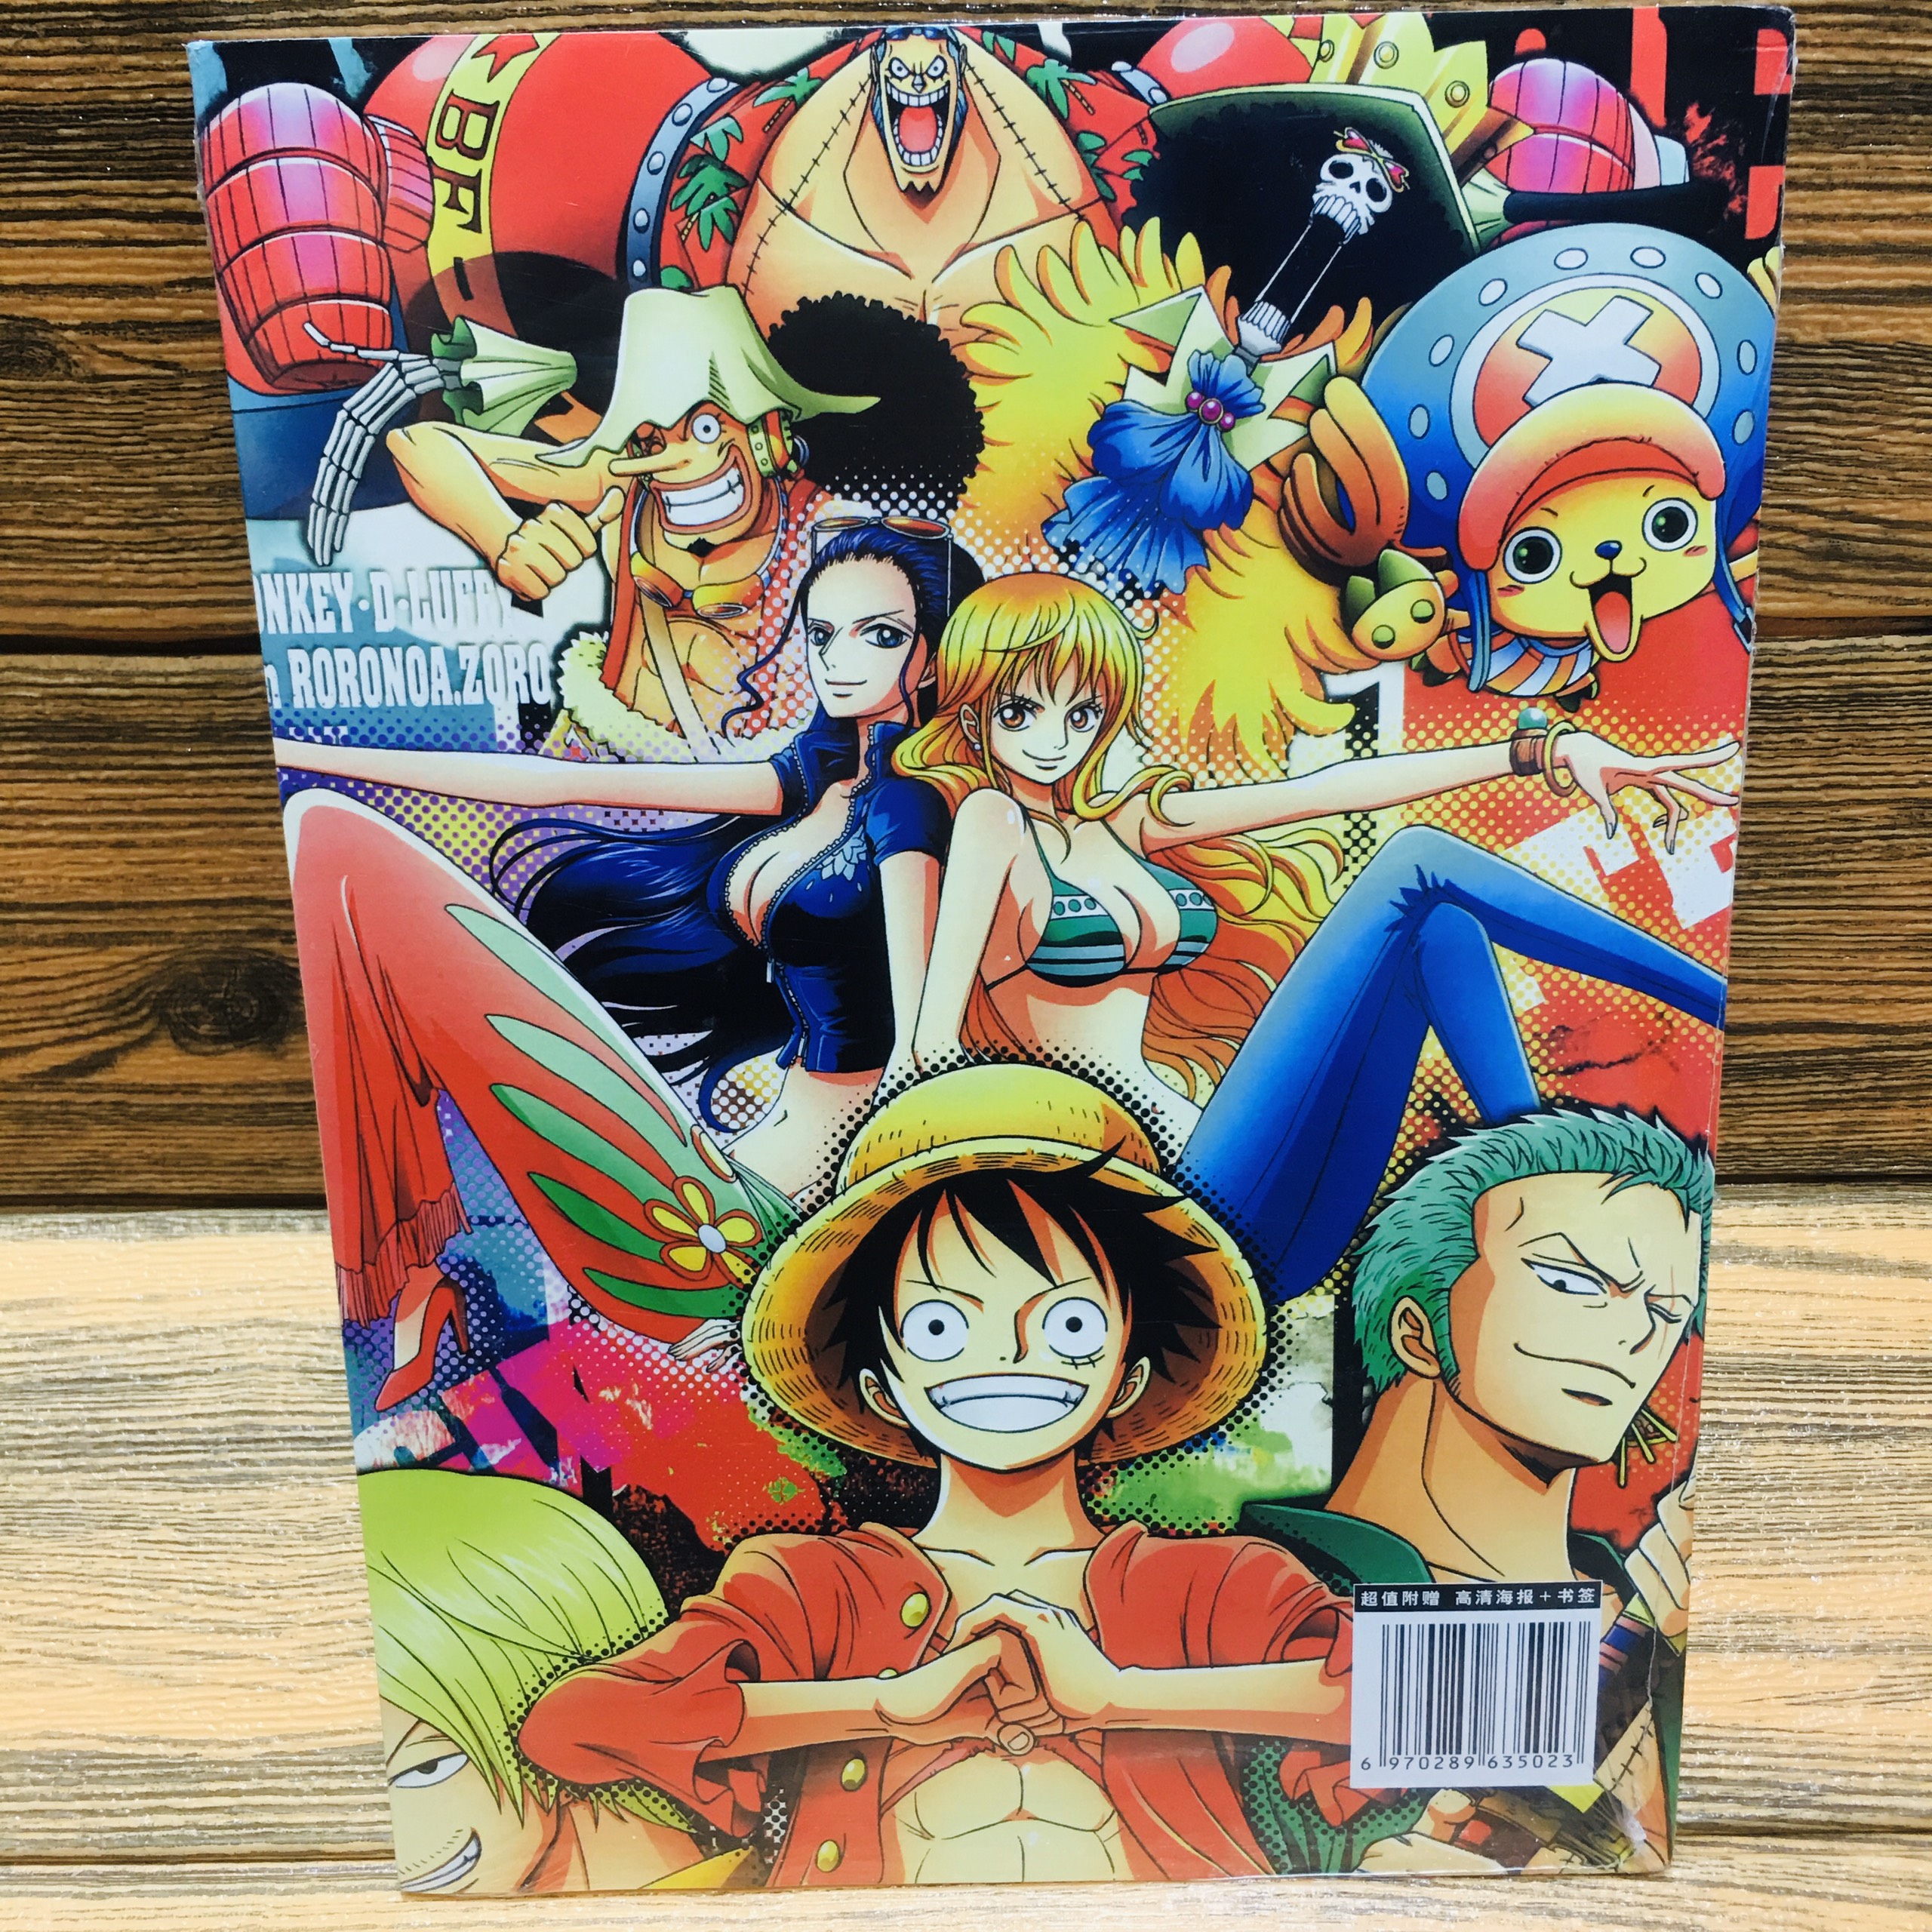 Bạn là fan của One Piece và đang tìm kiếm những món đồ họa liên quan đến bộ truyện ưa thích của mình? Vào năm 2024, chúng tôi sẽ cung cấp cho bạn những sản phẩm One Piece giá rẻ nhất trên thị trường. Hãy xem ngay hình ảnh đính kèm để tìm kiếm lựa chọn hoàn hảo cho sự đam mê với One Piece của bạn.